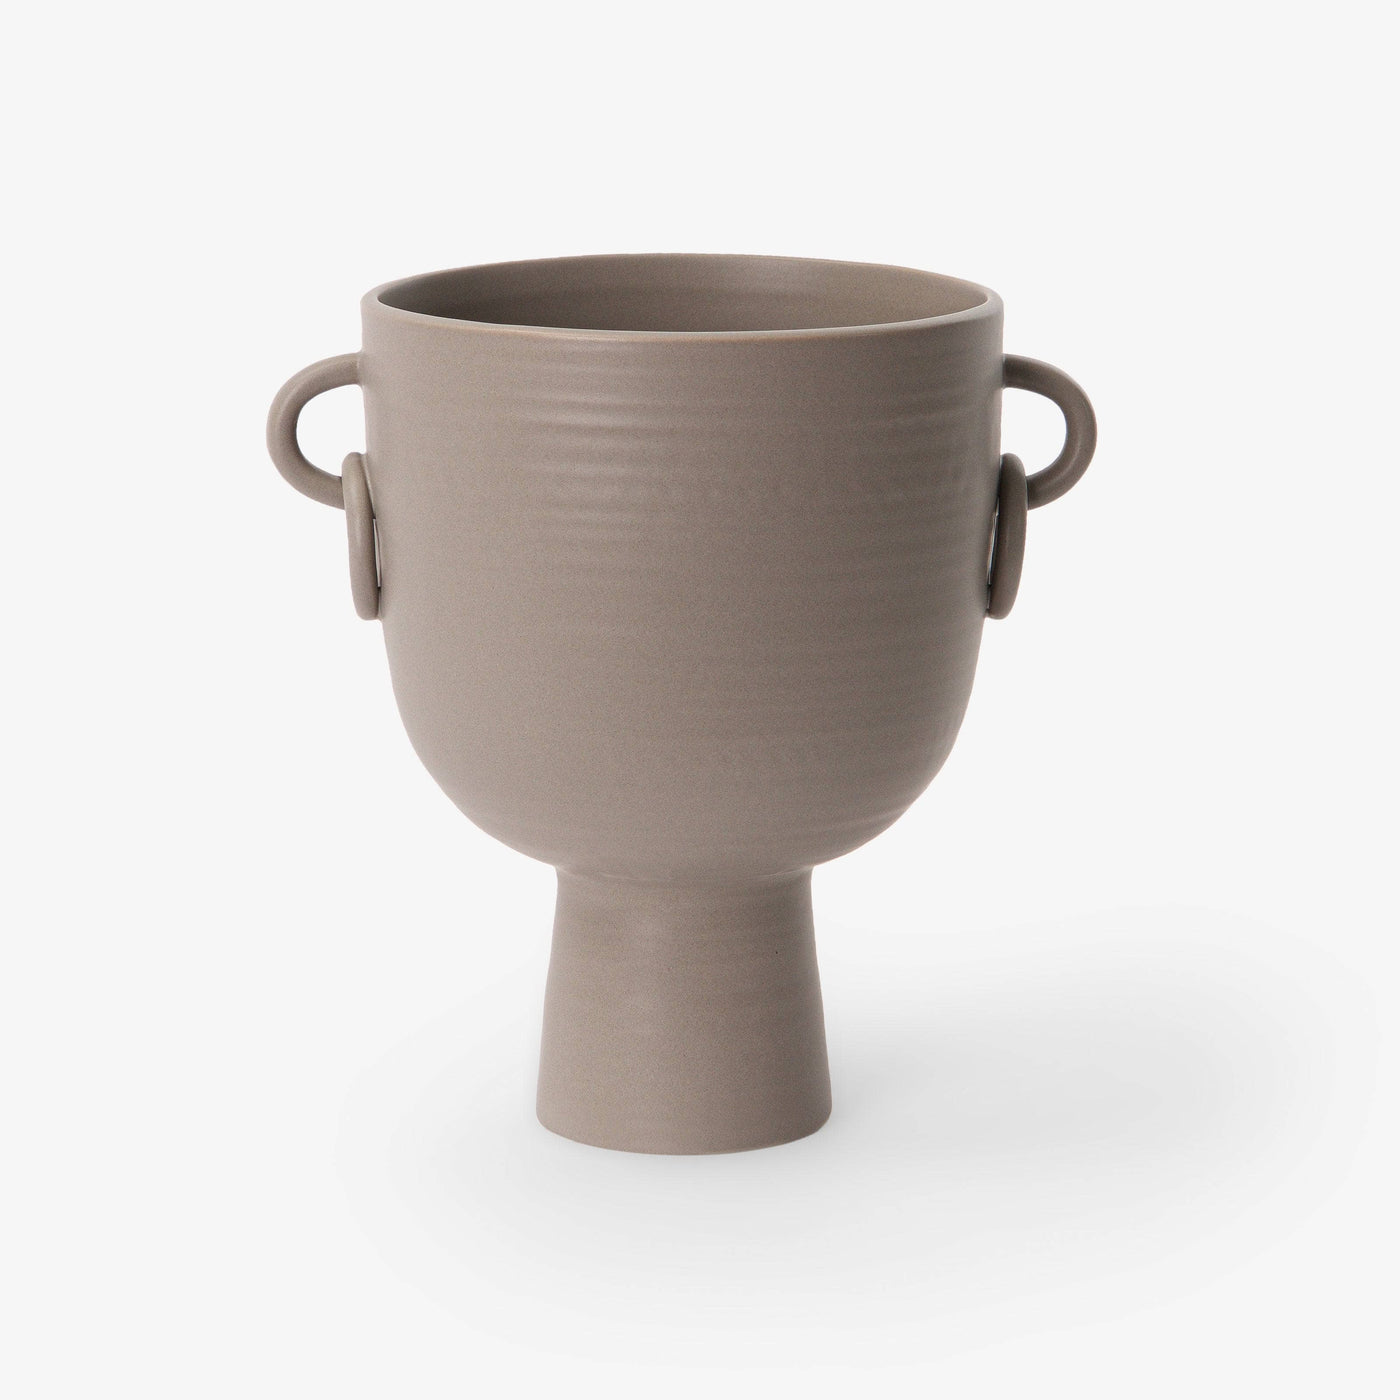 Branksome Ceramic Vase, Taupe, S Vases sazy.com